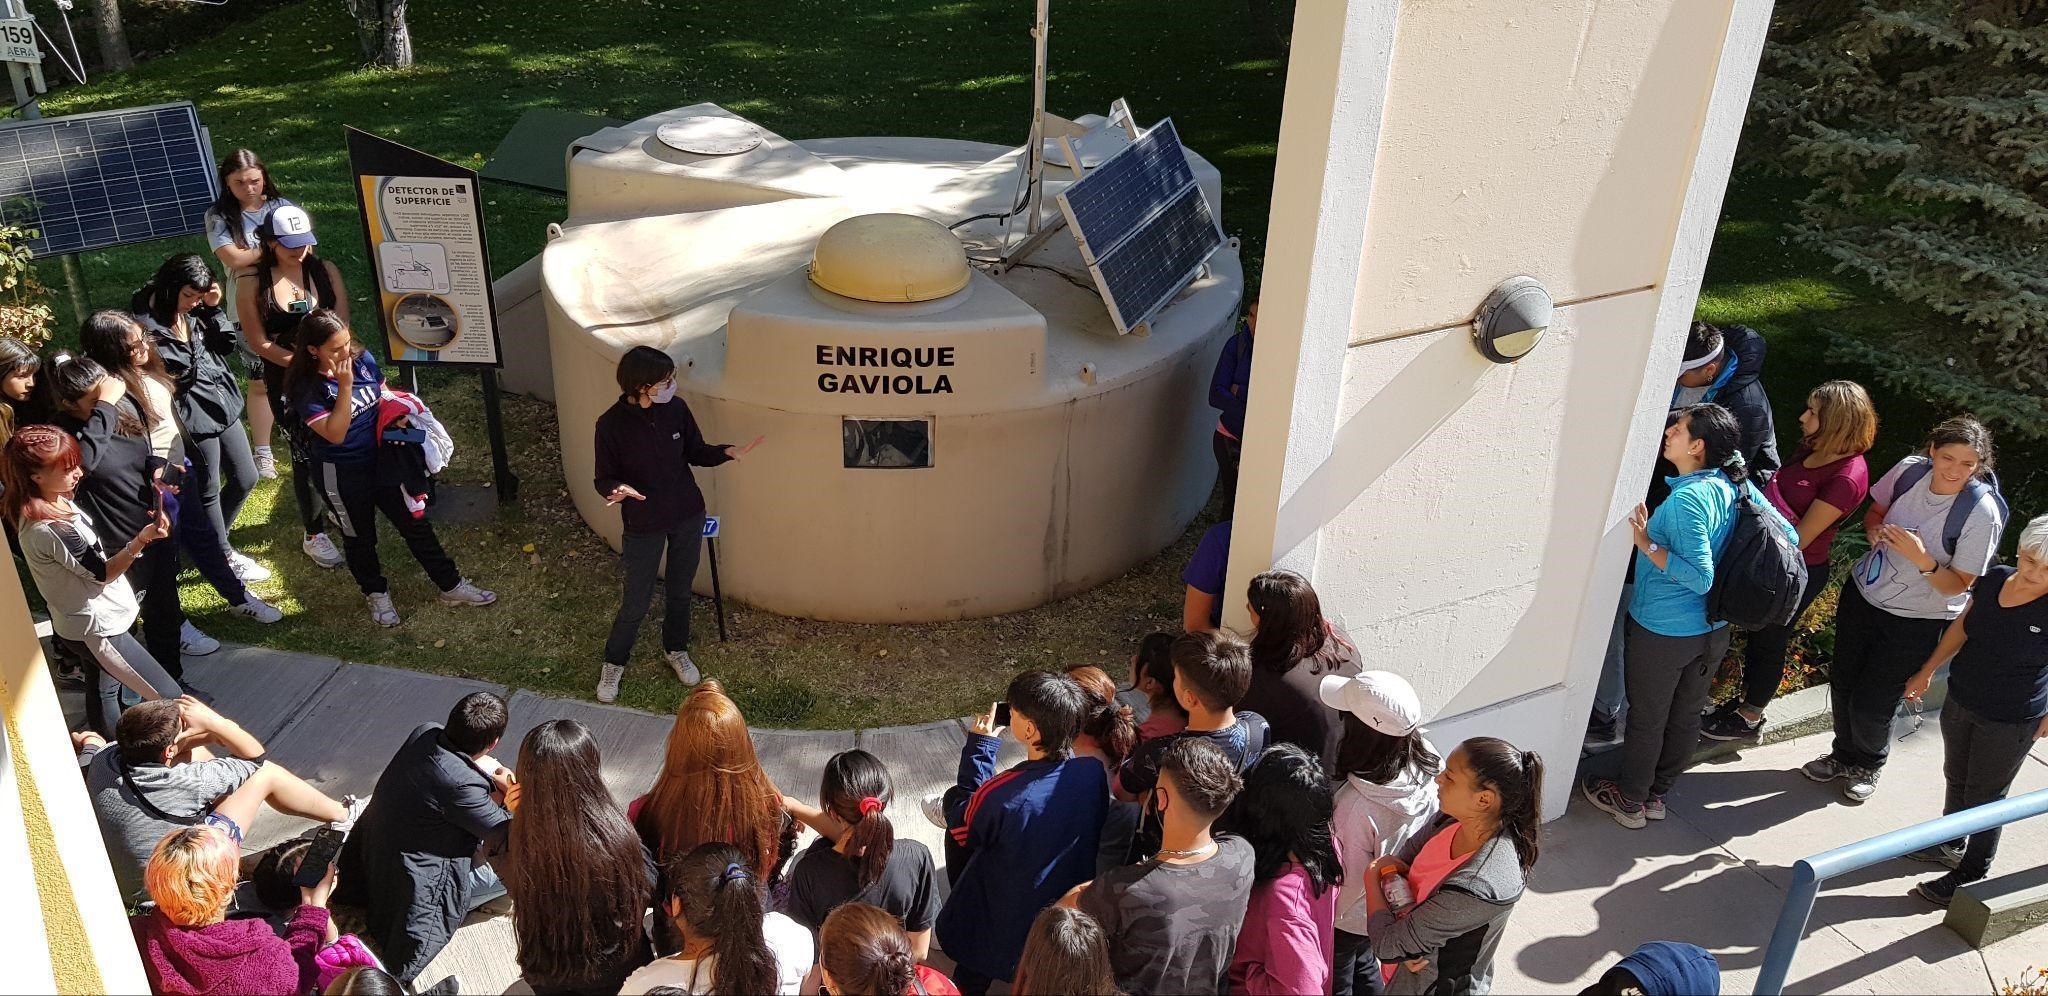 Visita de estudiantes de escuela
secundaria a las instalaciones del observatorio. En el parque se encuentran
detectores en escala 1:1, como el detector Enrique Gaviola.
Los detectores tienen nombres que fueron propuestos por alumnos de escuelas malargüinas.